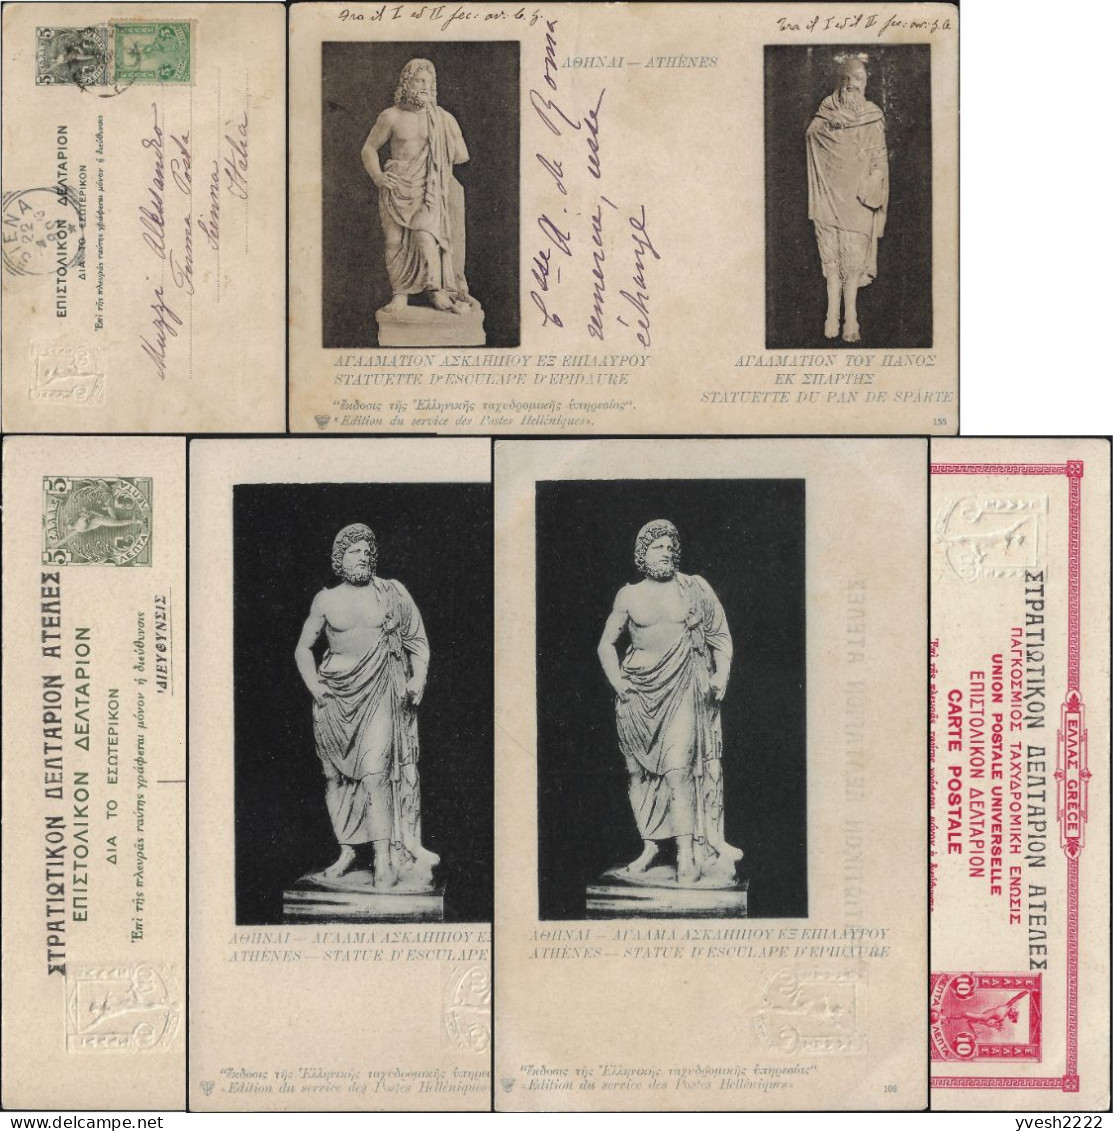 Grèce 1903 Et 1915. Entiers Officiels. Athènes, Statues D'Esculape D'Épidaure, Dieu De La Médecine, & Pan De Sparte - Médecine